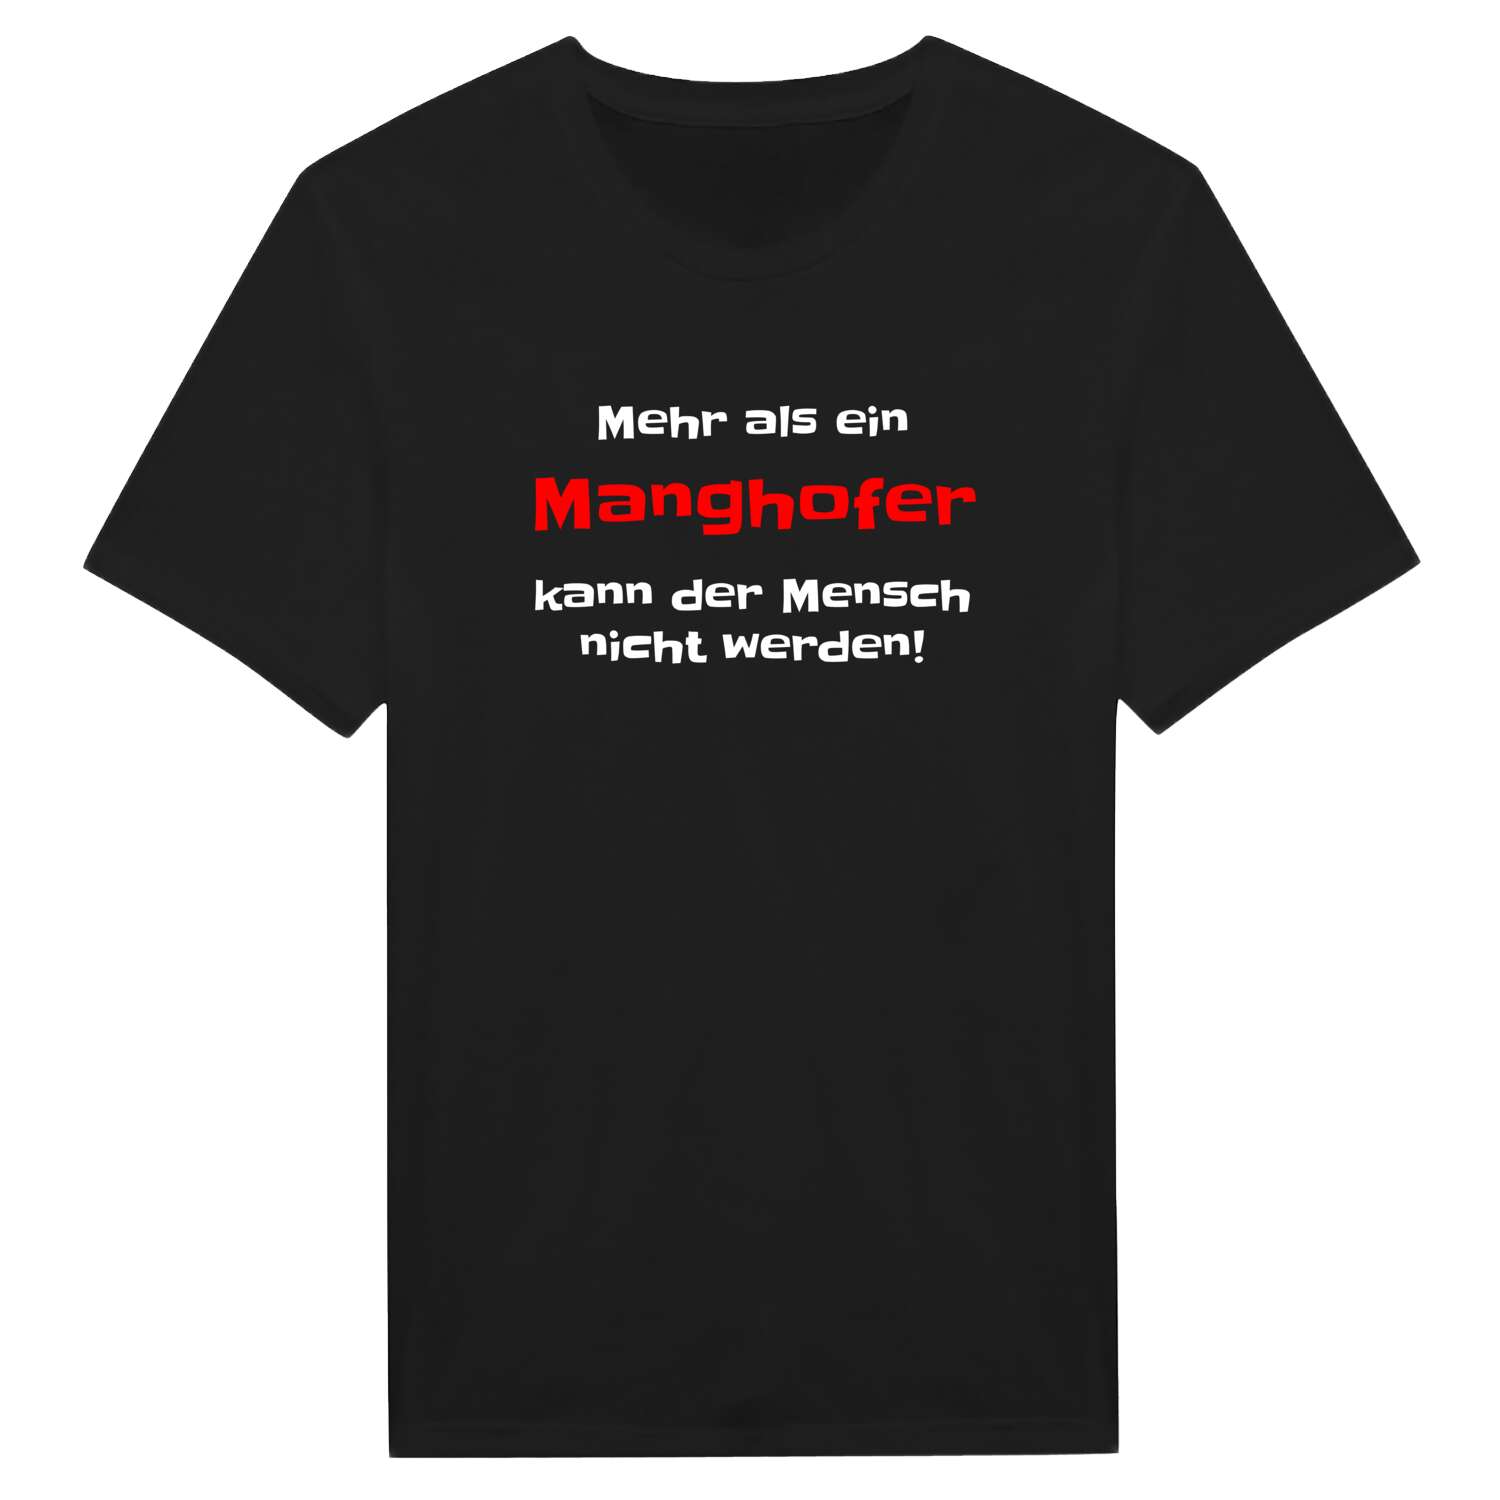 Manghof T-Shirt »Mehr als ein«